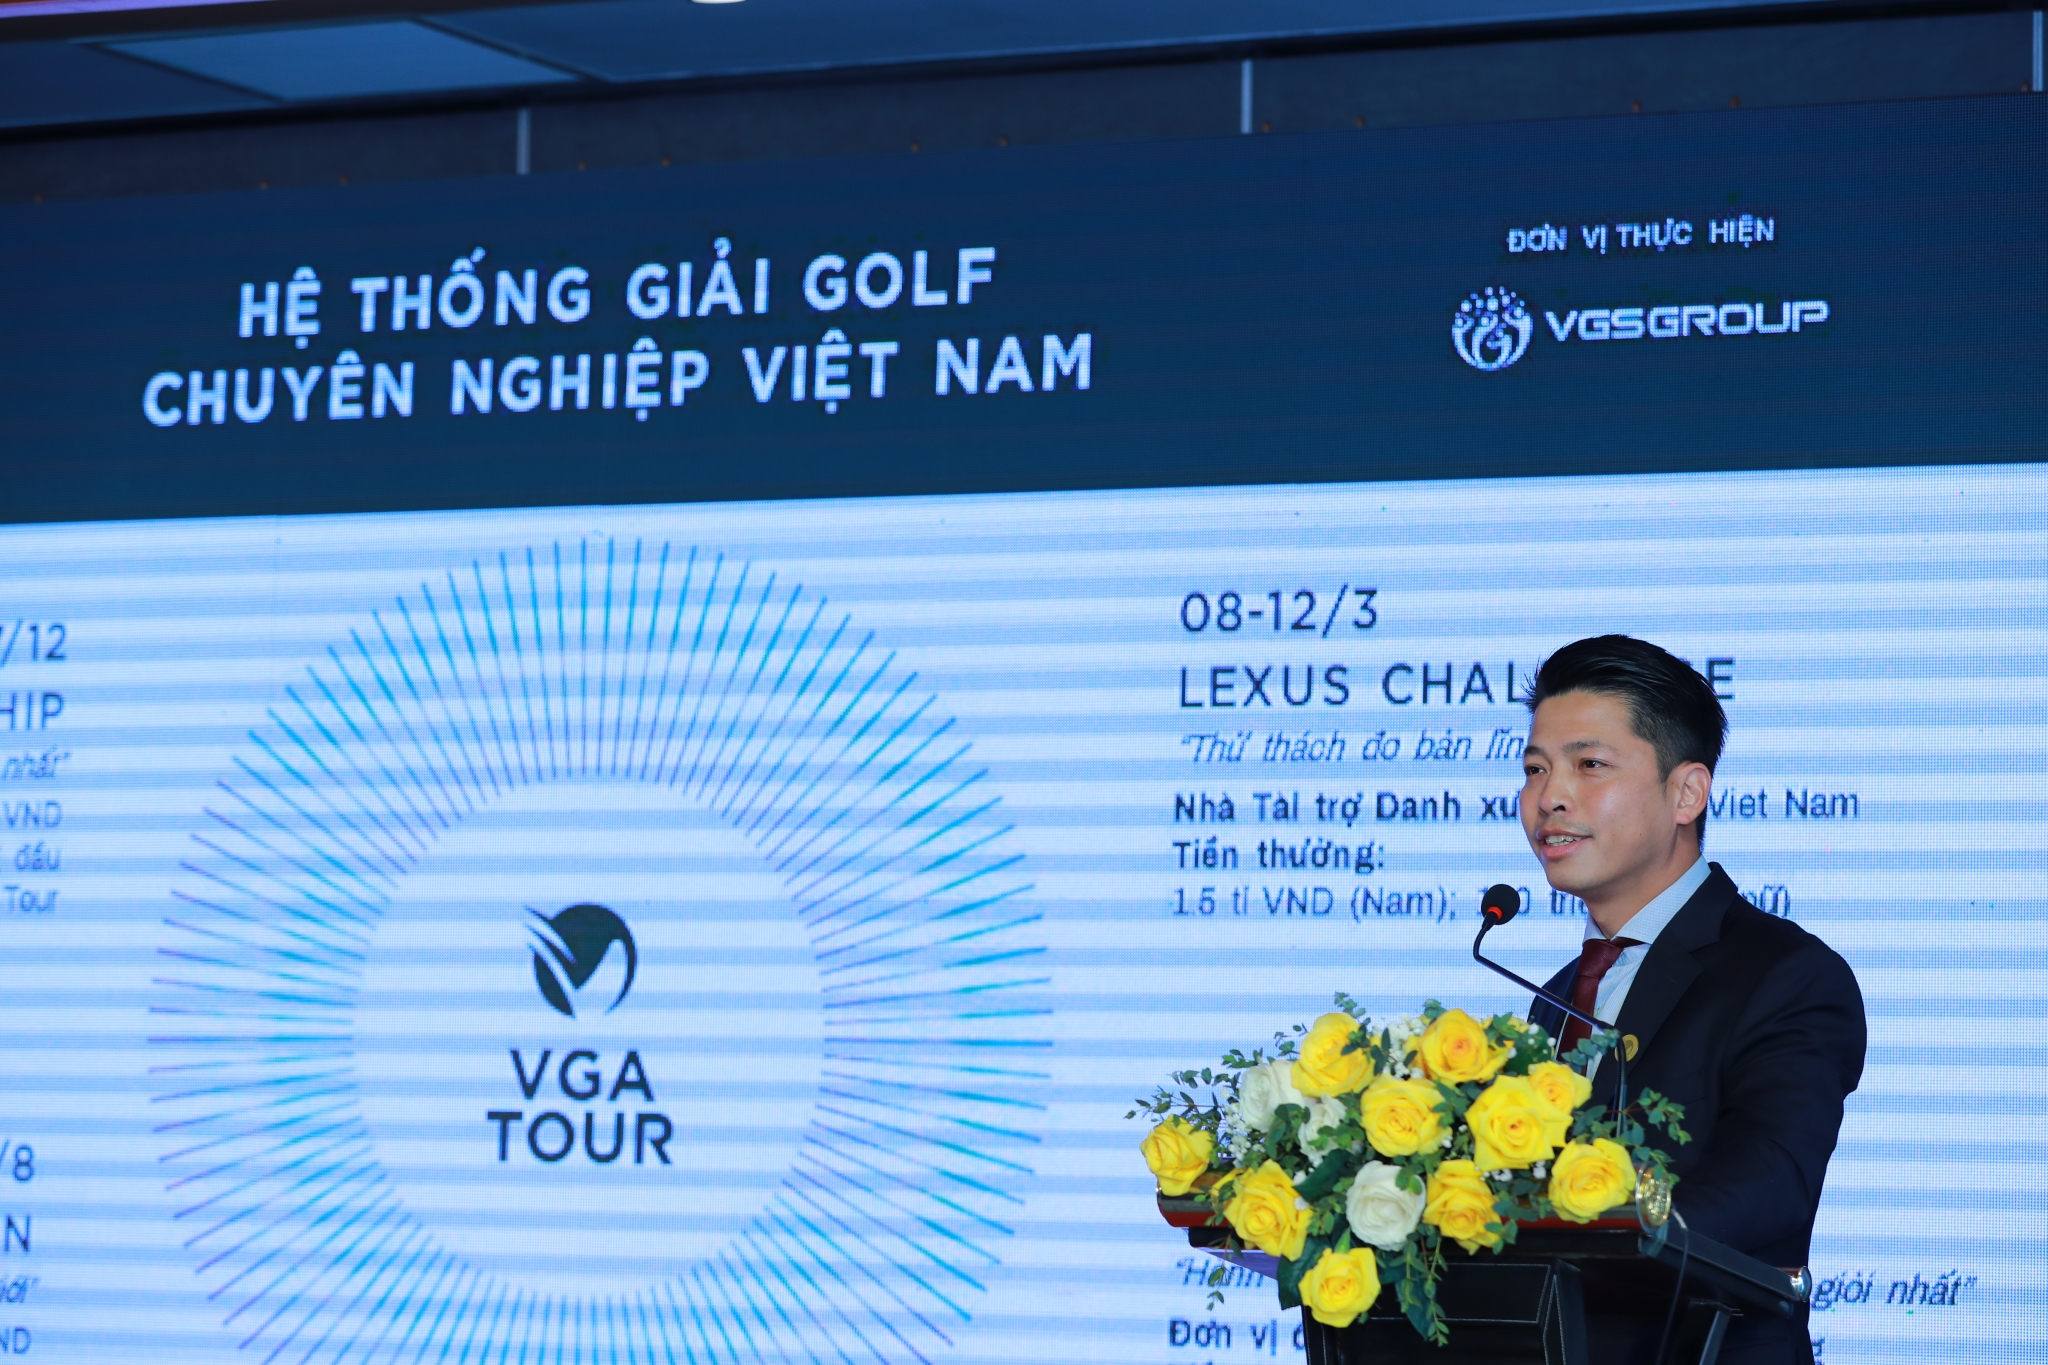 Nguyễn Thái Dương: “VGA Tour sẽ hướng đến việc tổ chức các giải golf quốc tế lớn trong tương lai”